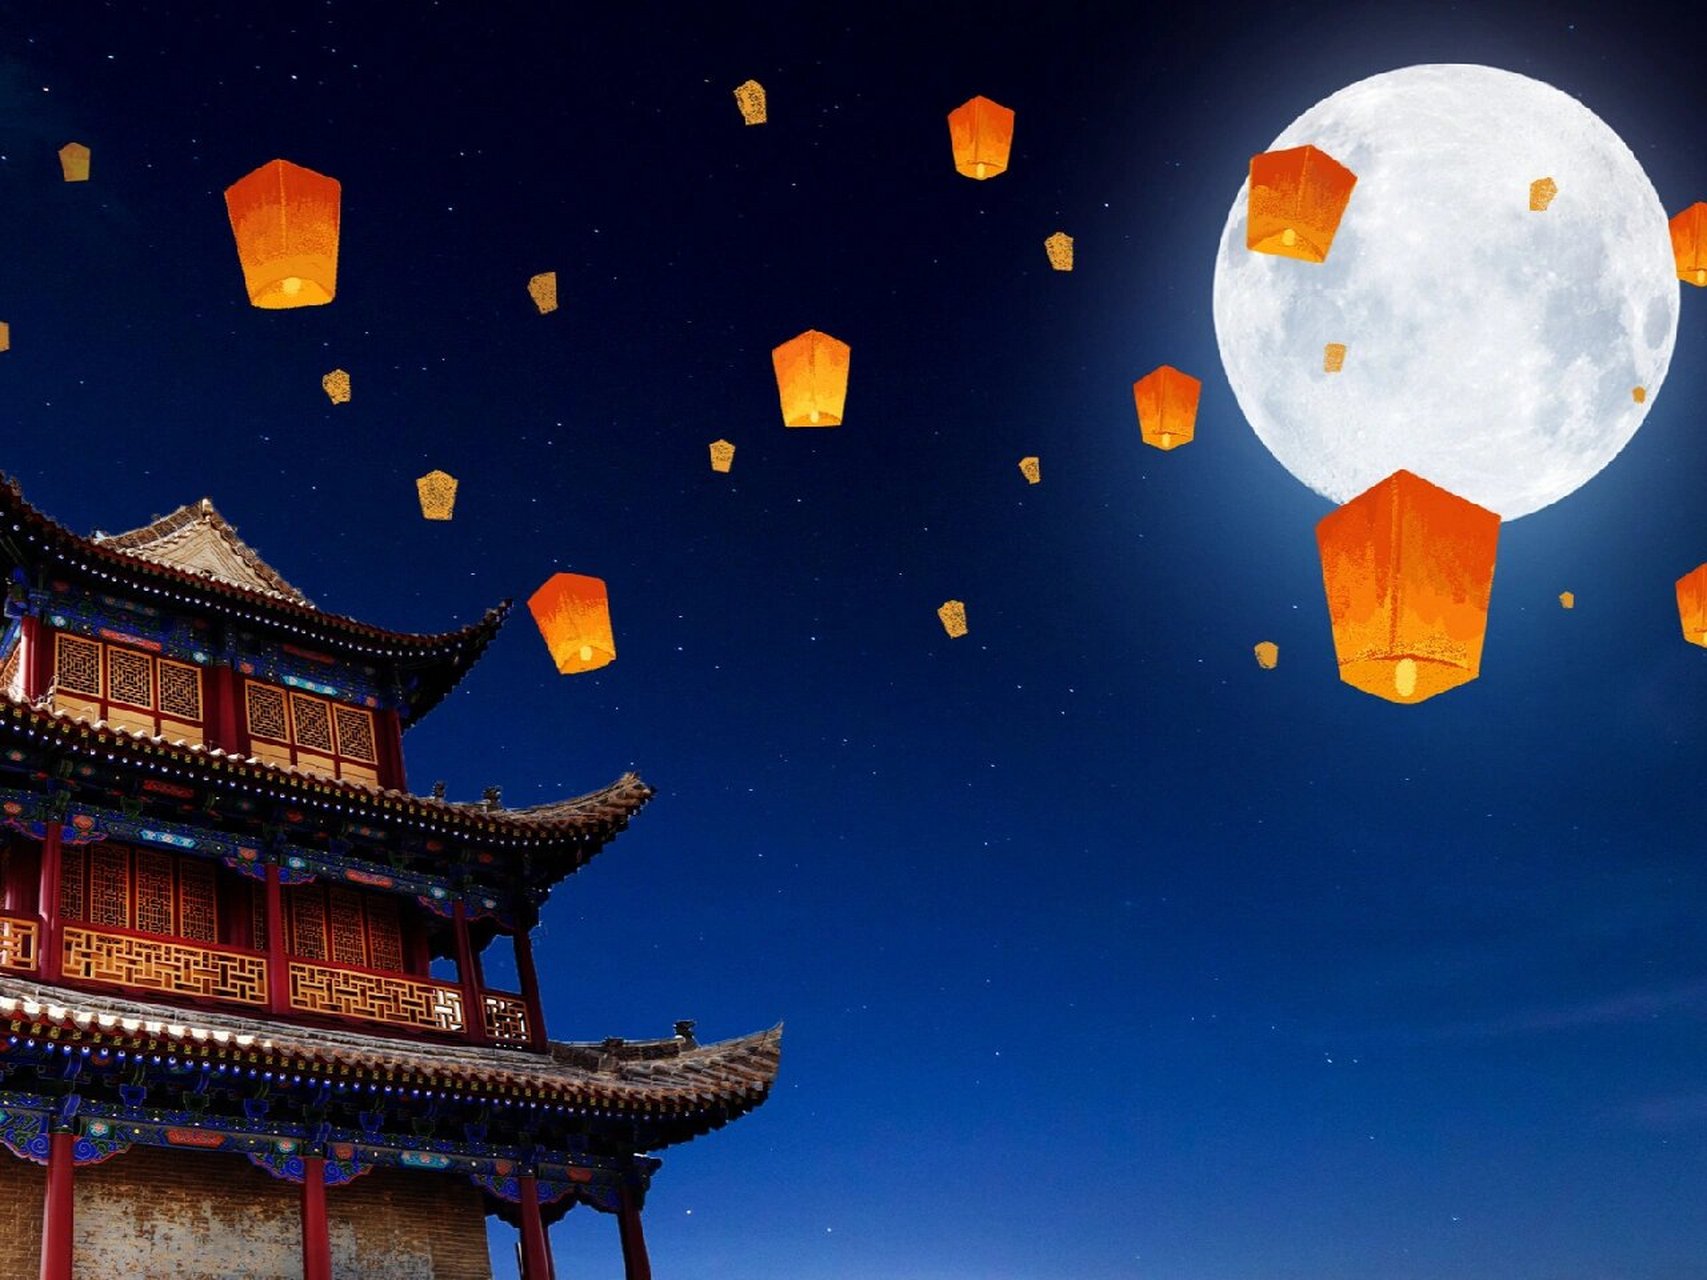 中秋月亮插画配图 中秋节临近 在中秋的夜晚 与亲人相聚的晚上想必是